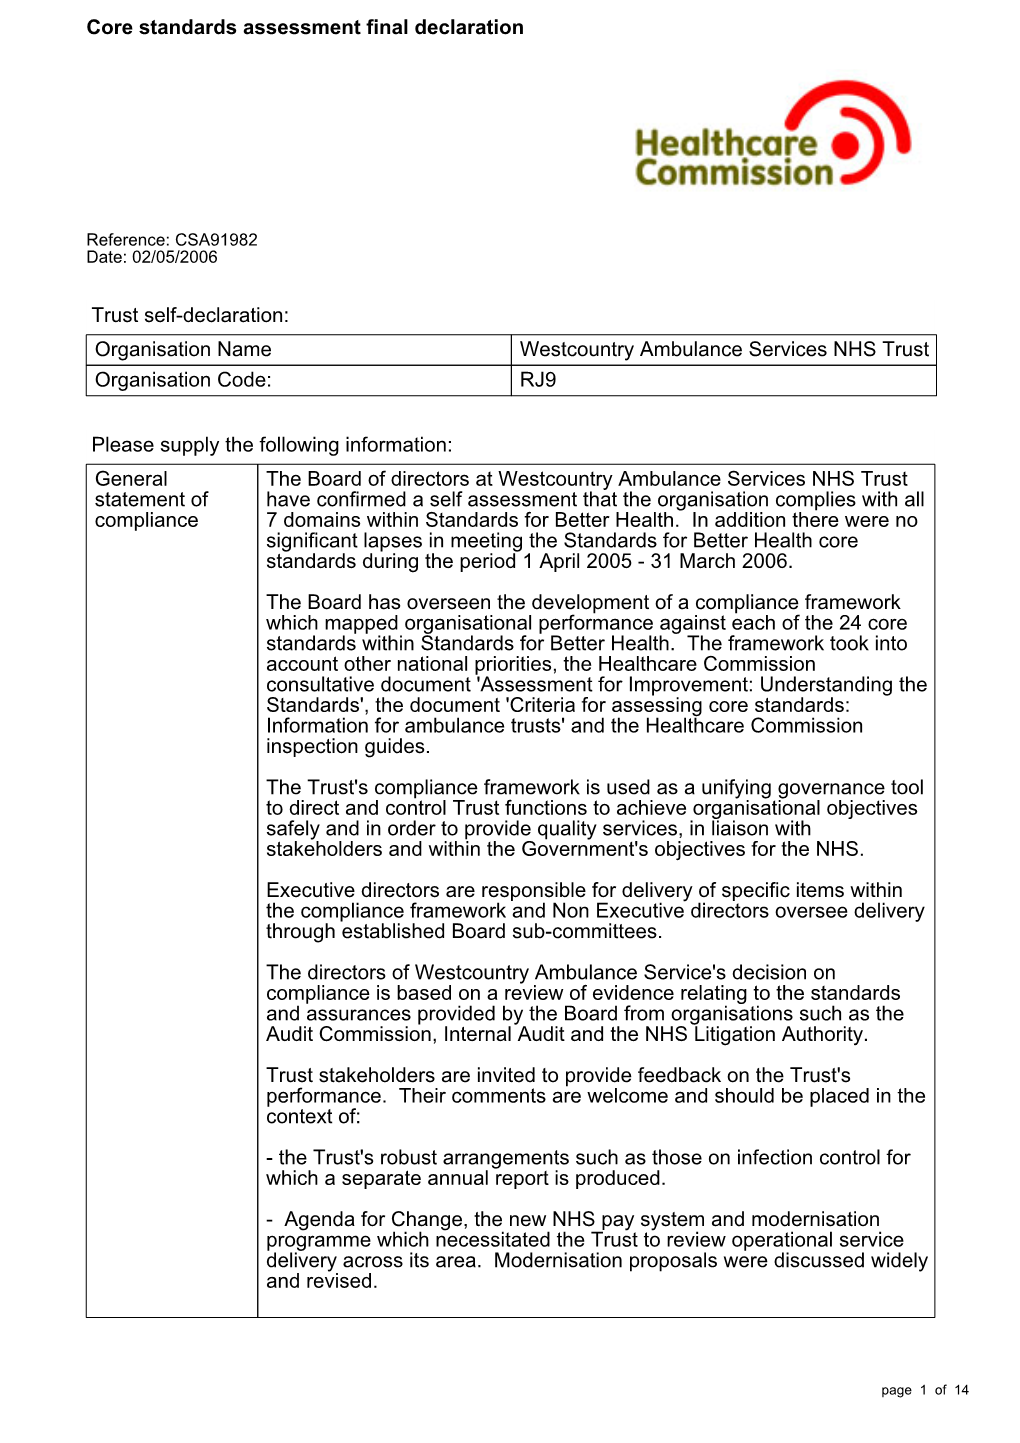 Core Standards Assessment Final Declaration-CSA91982